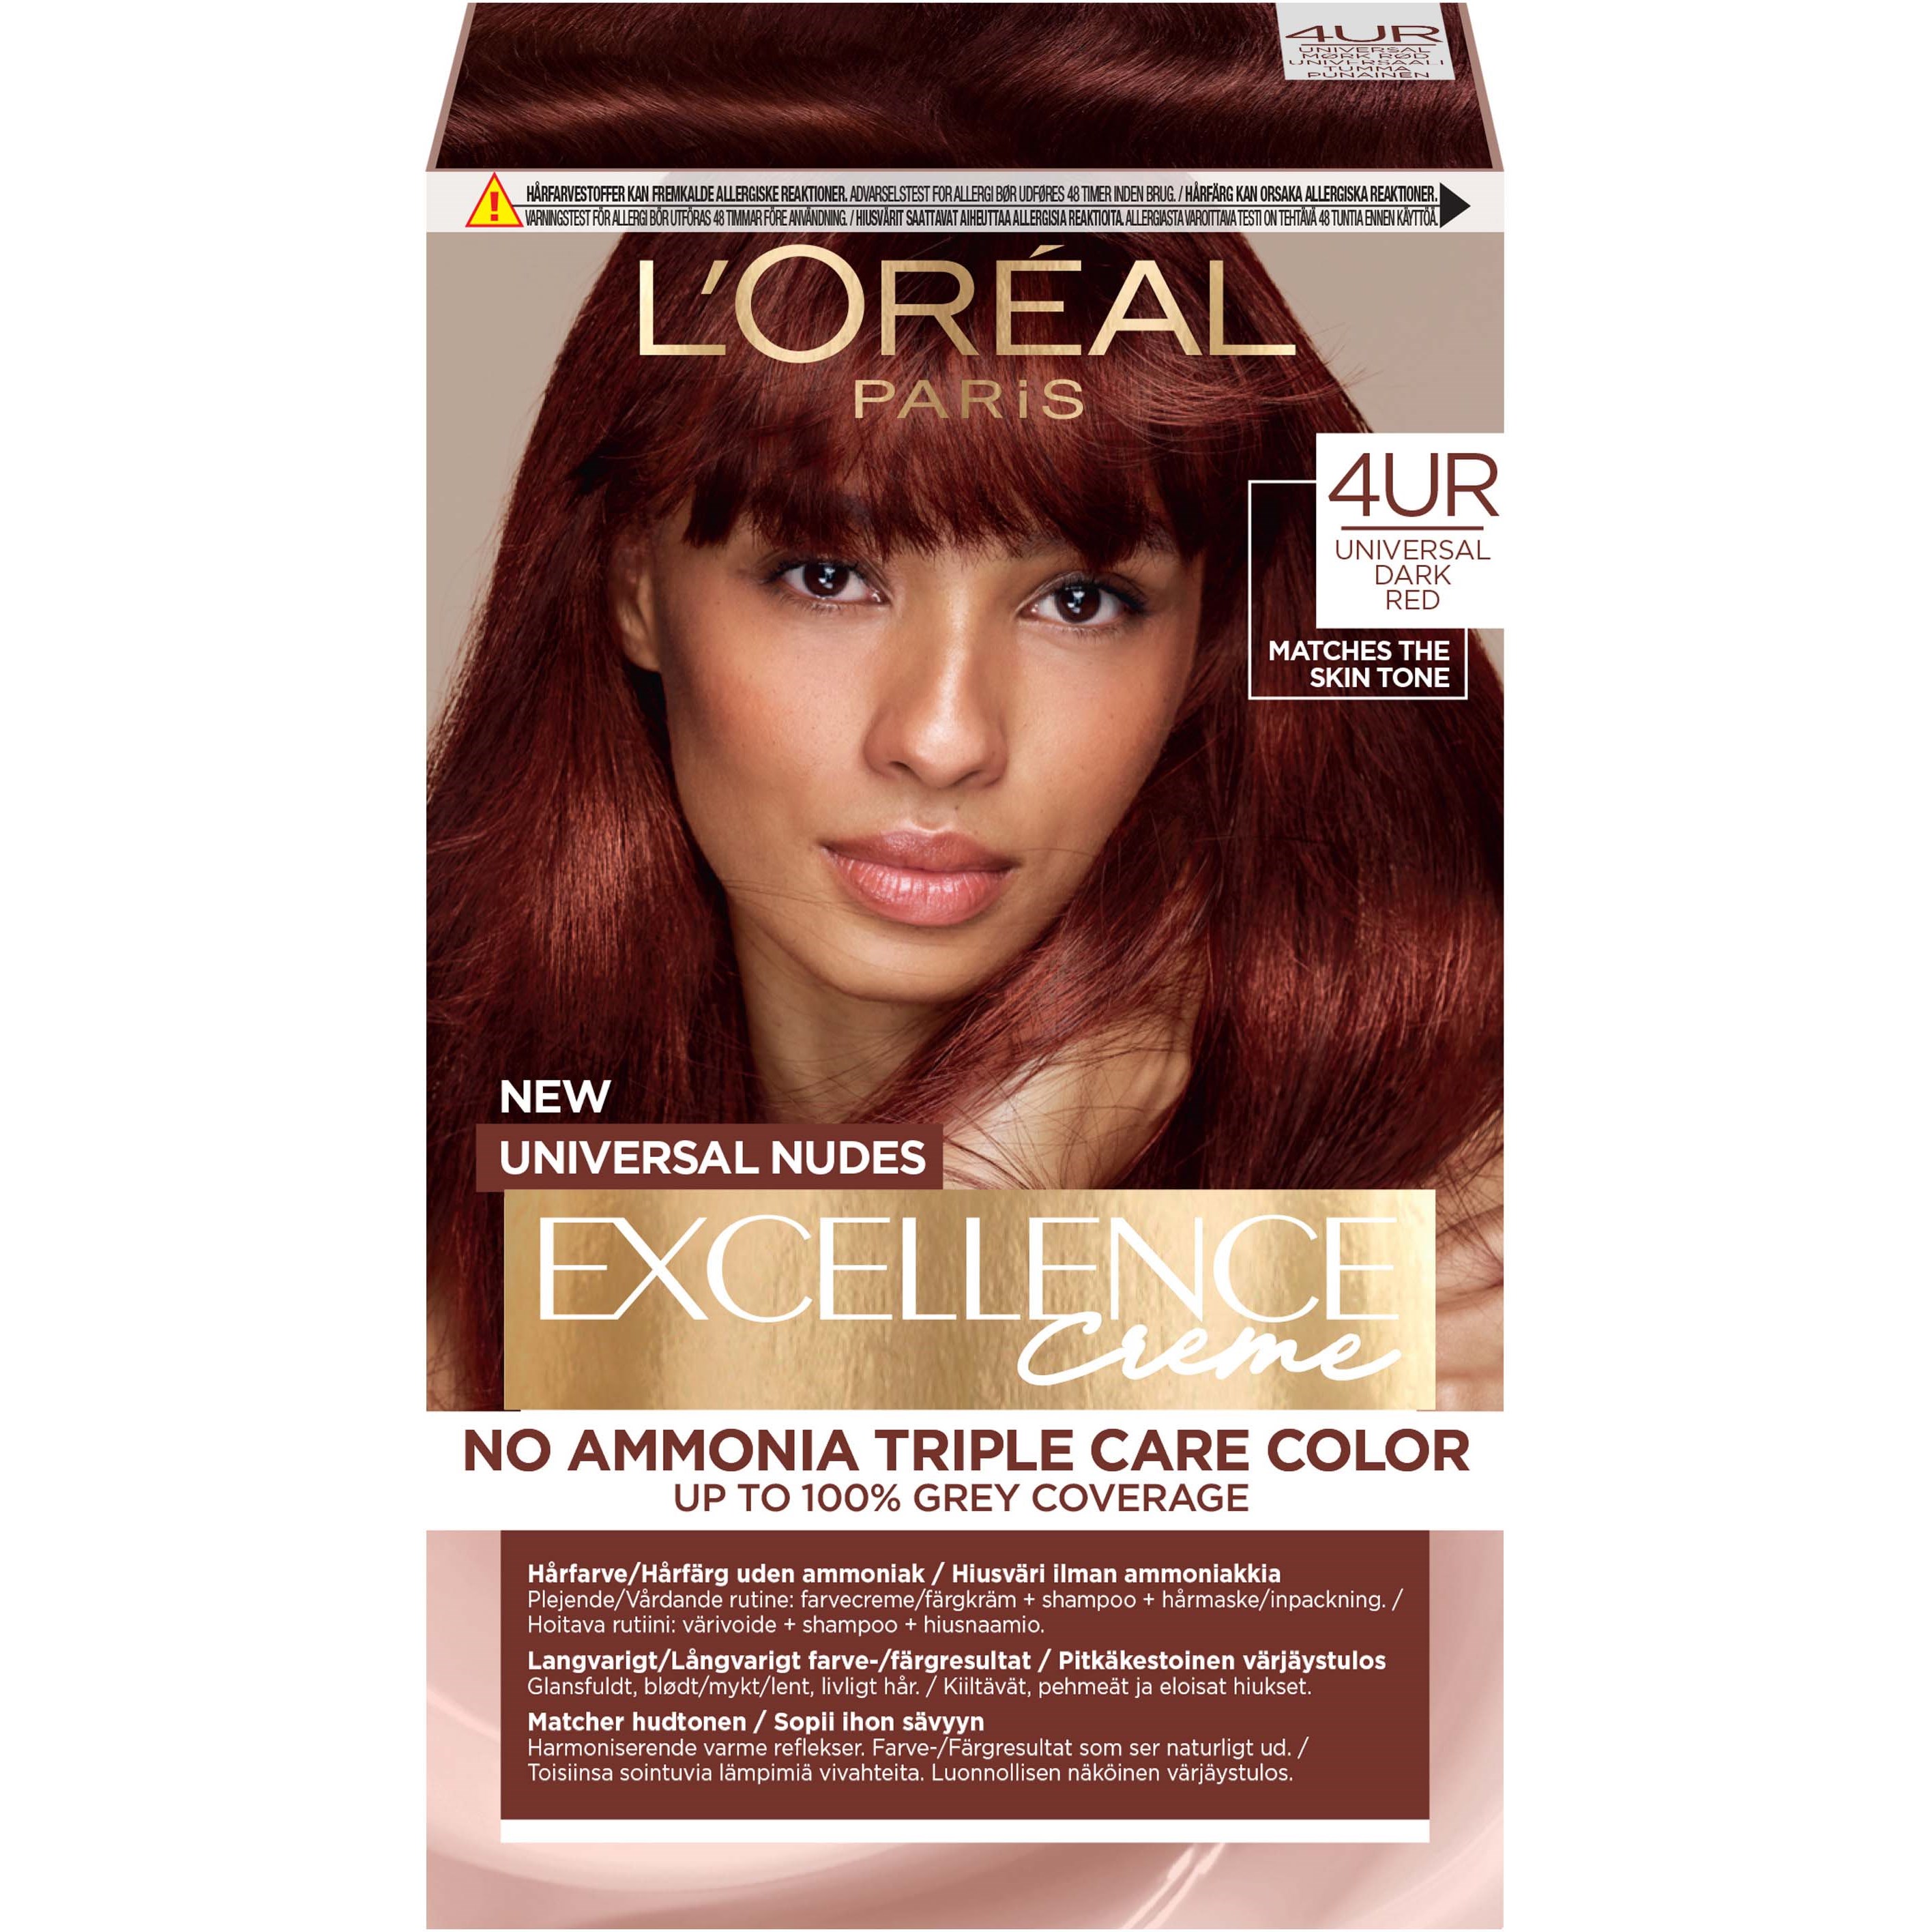 Bilde av Loreal Paris Excellence Crème Universal Nudes Hair Color 4ur Universal